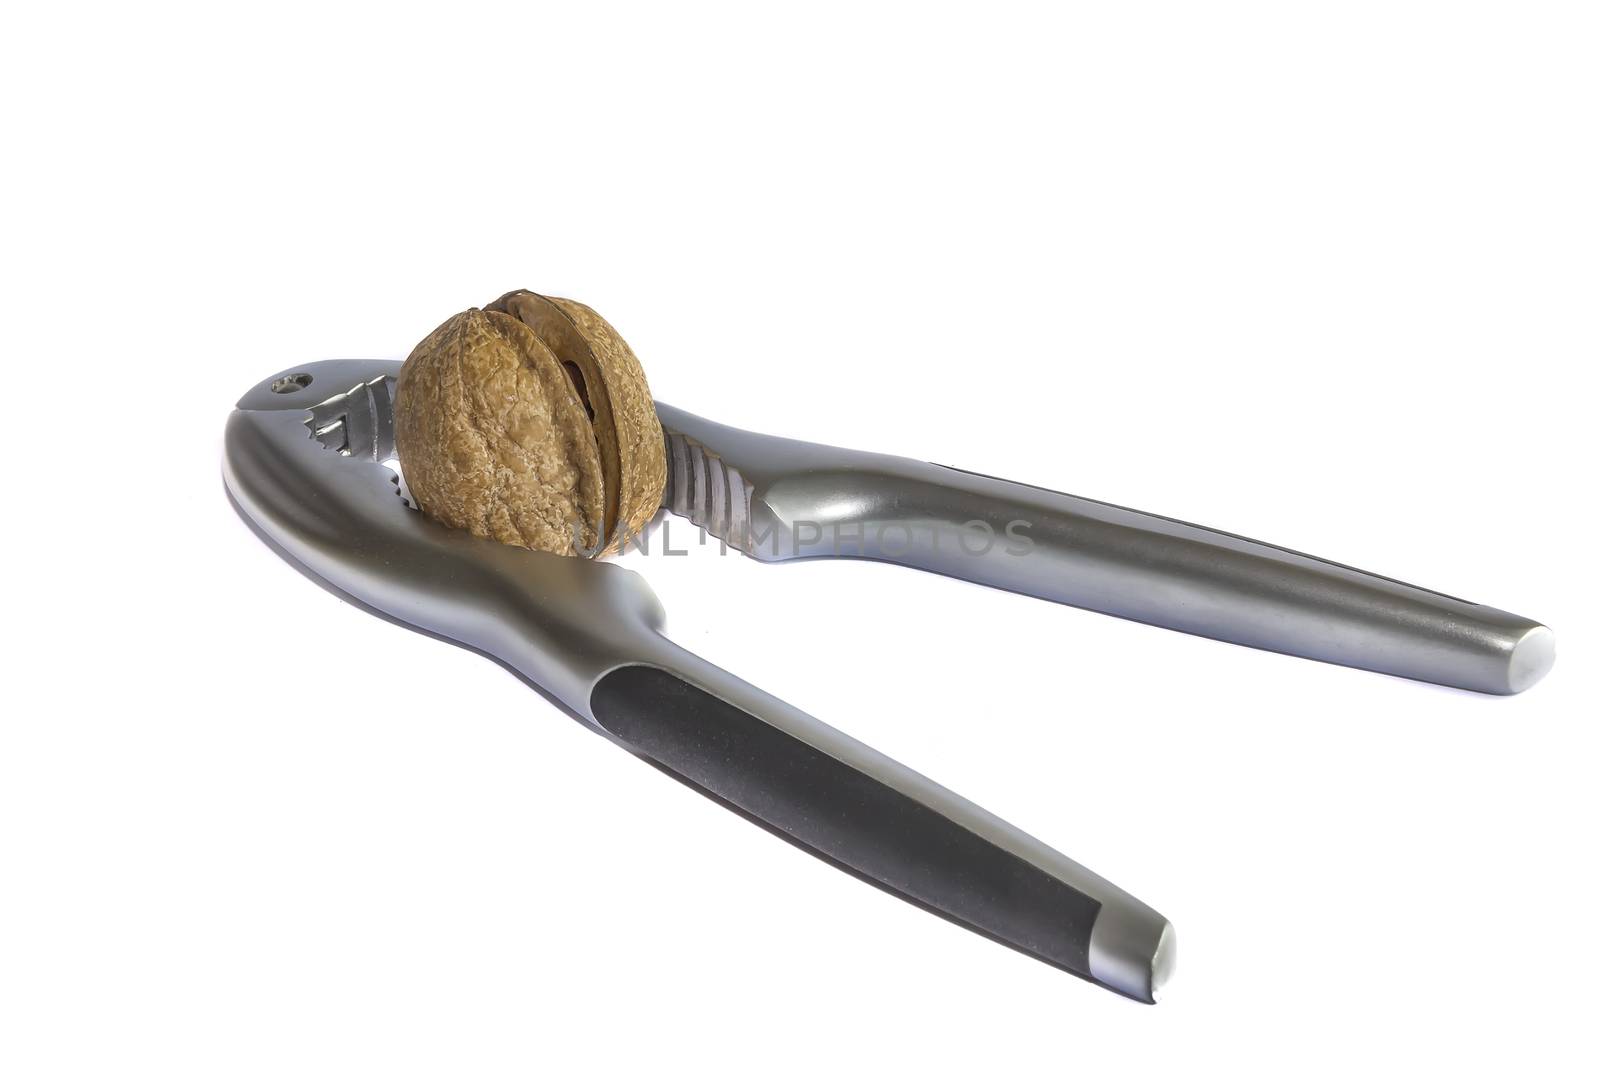 Broken walnut in a nutcracker by EdVal